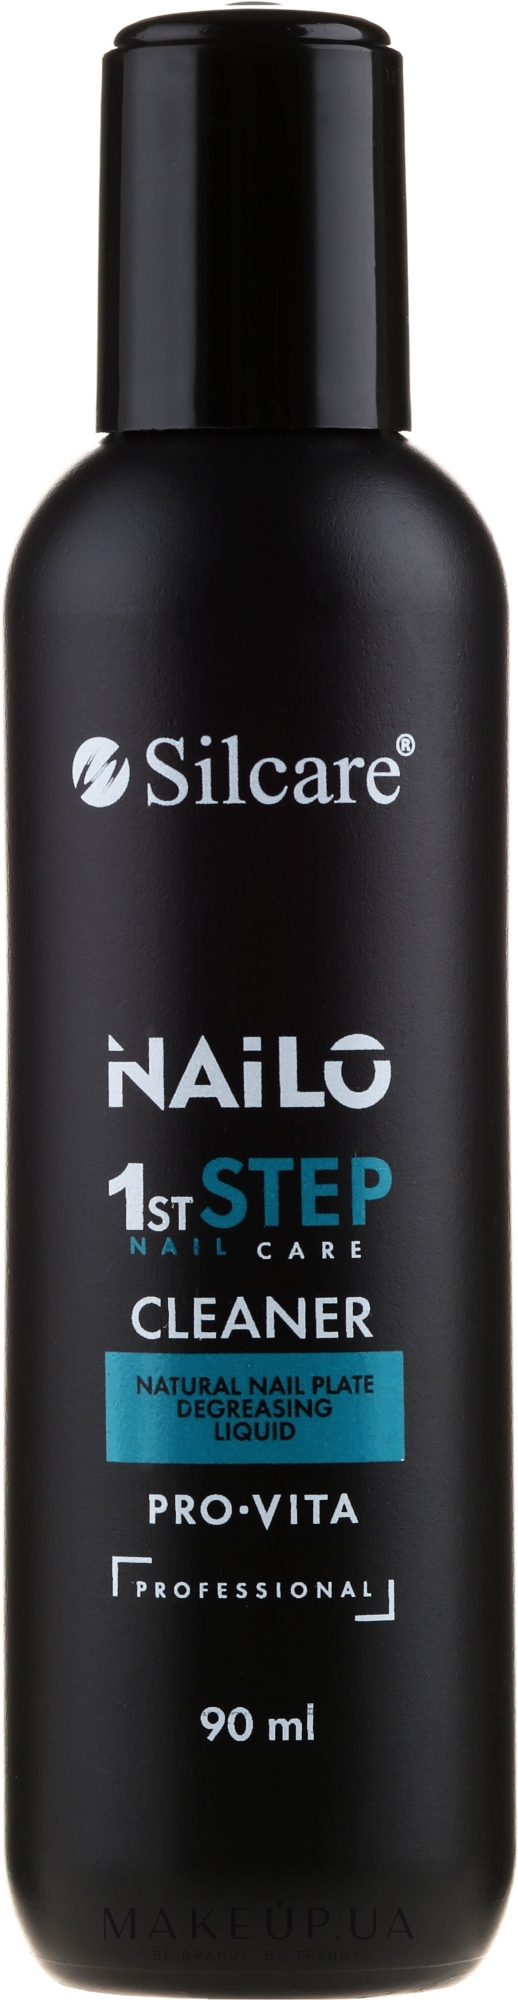 Знежирювач для нігтів - Silcare Nailo 1st Step Cleaner Pro-Vita — фото 90ml